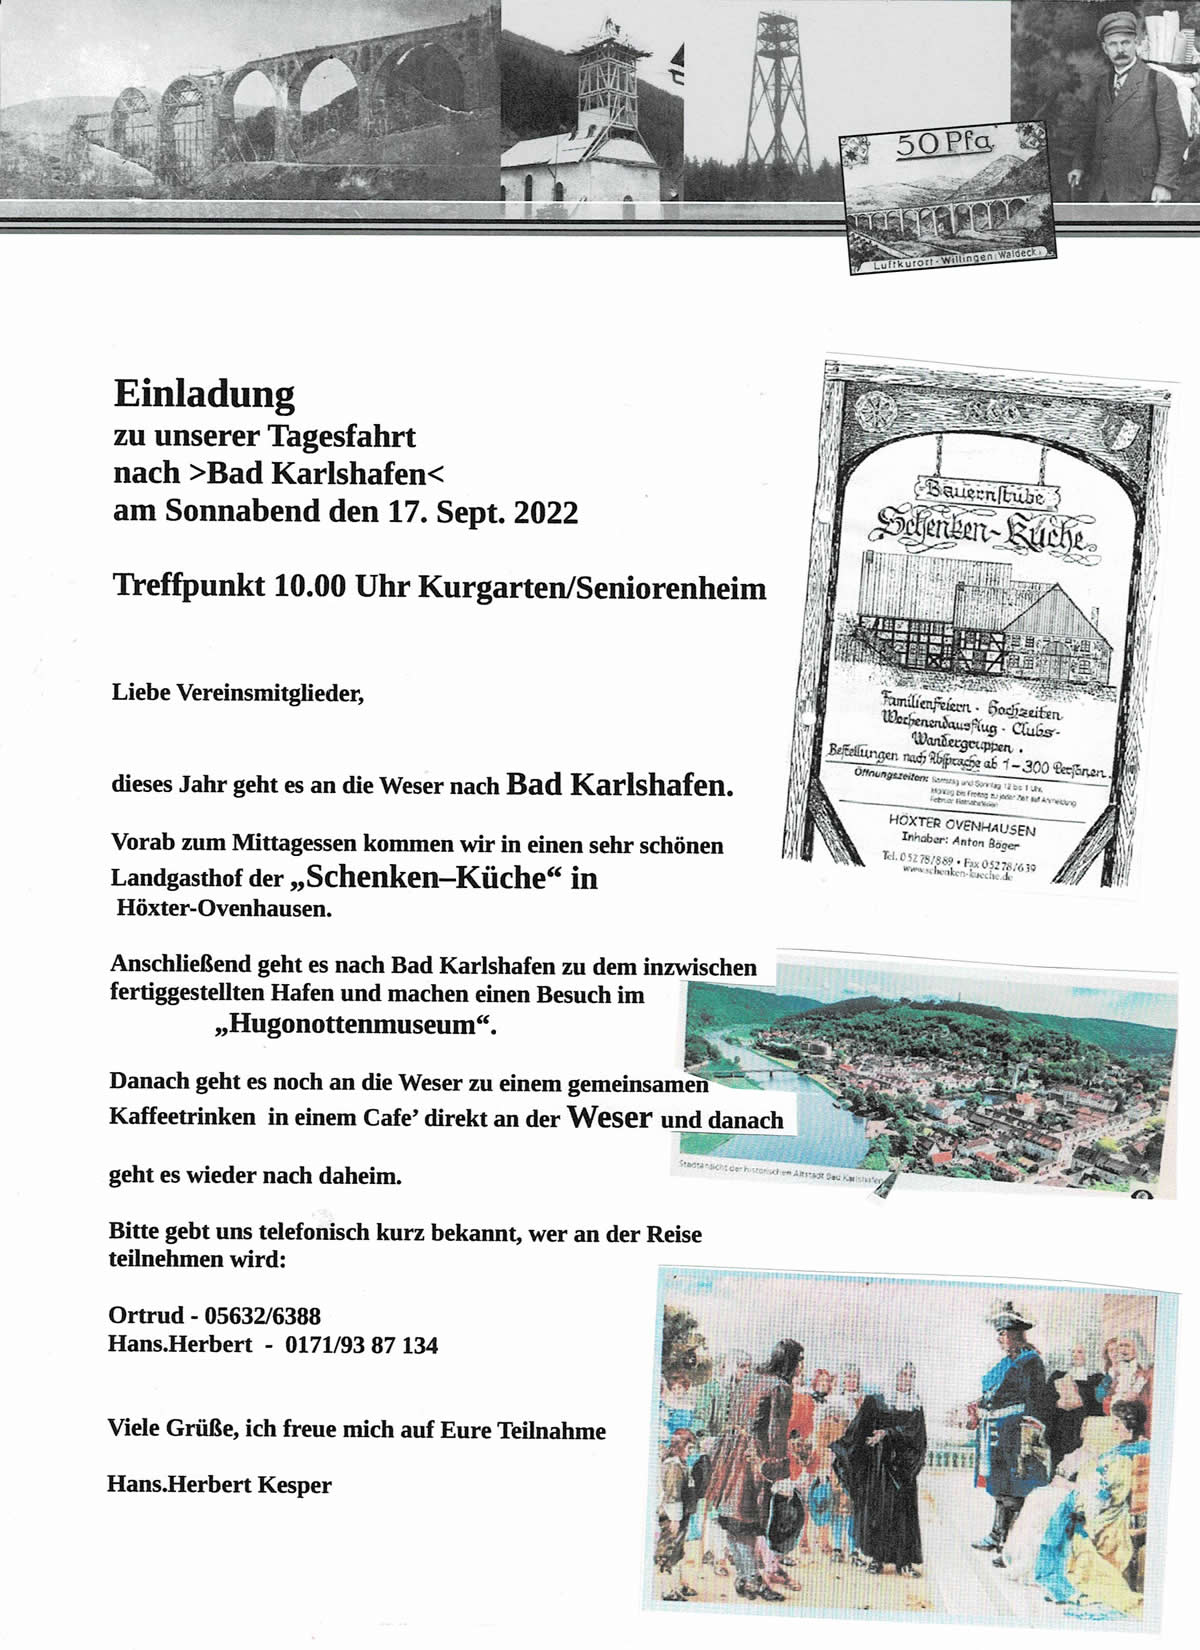 Einladung, Tagesfahrt nach Bad Karlshafen